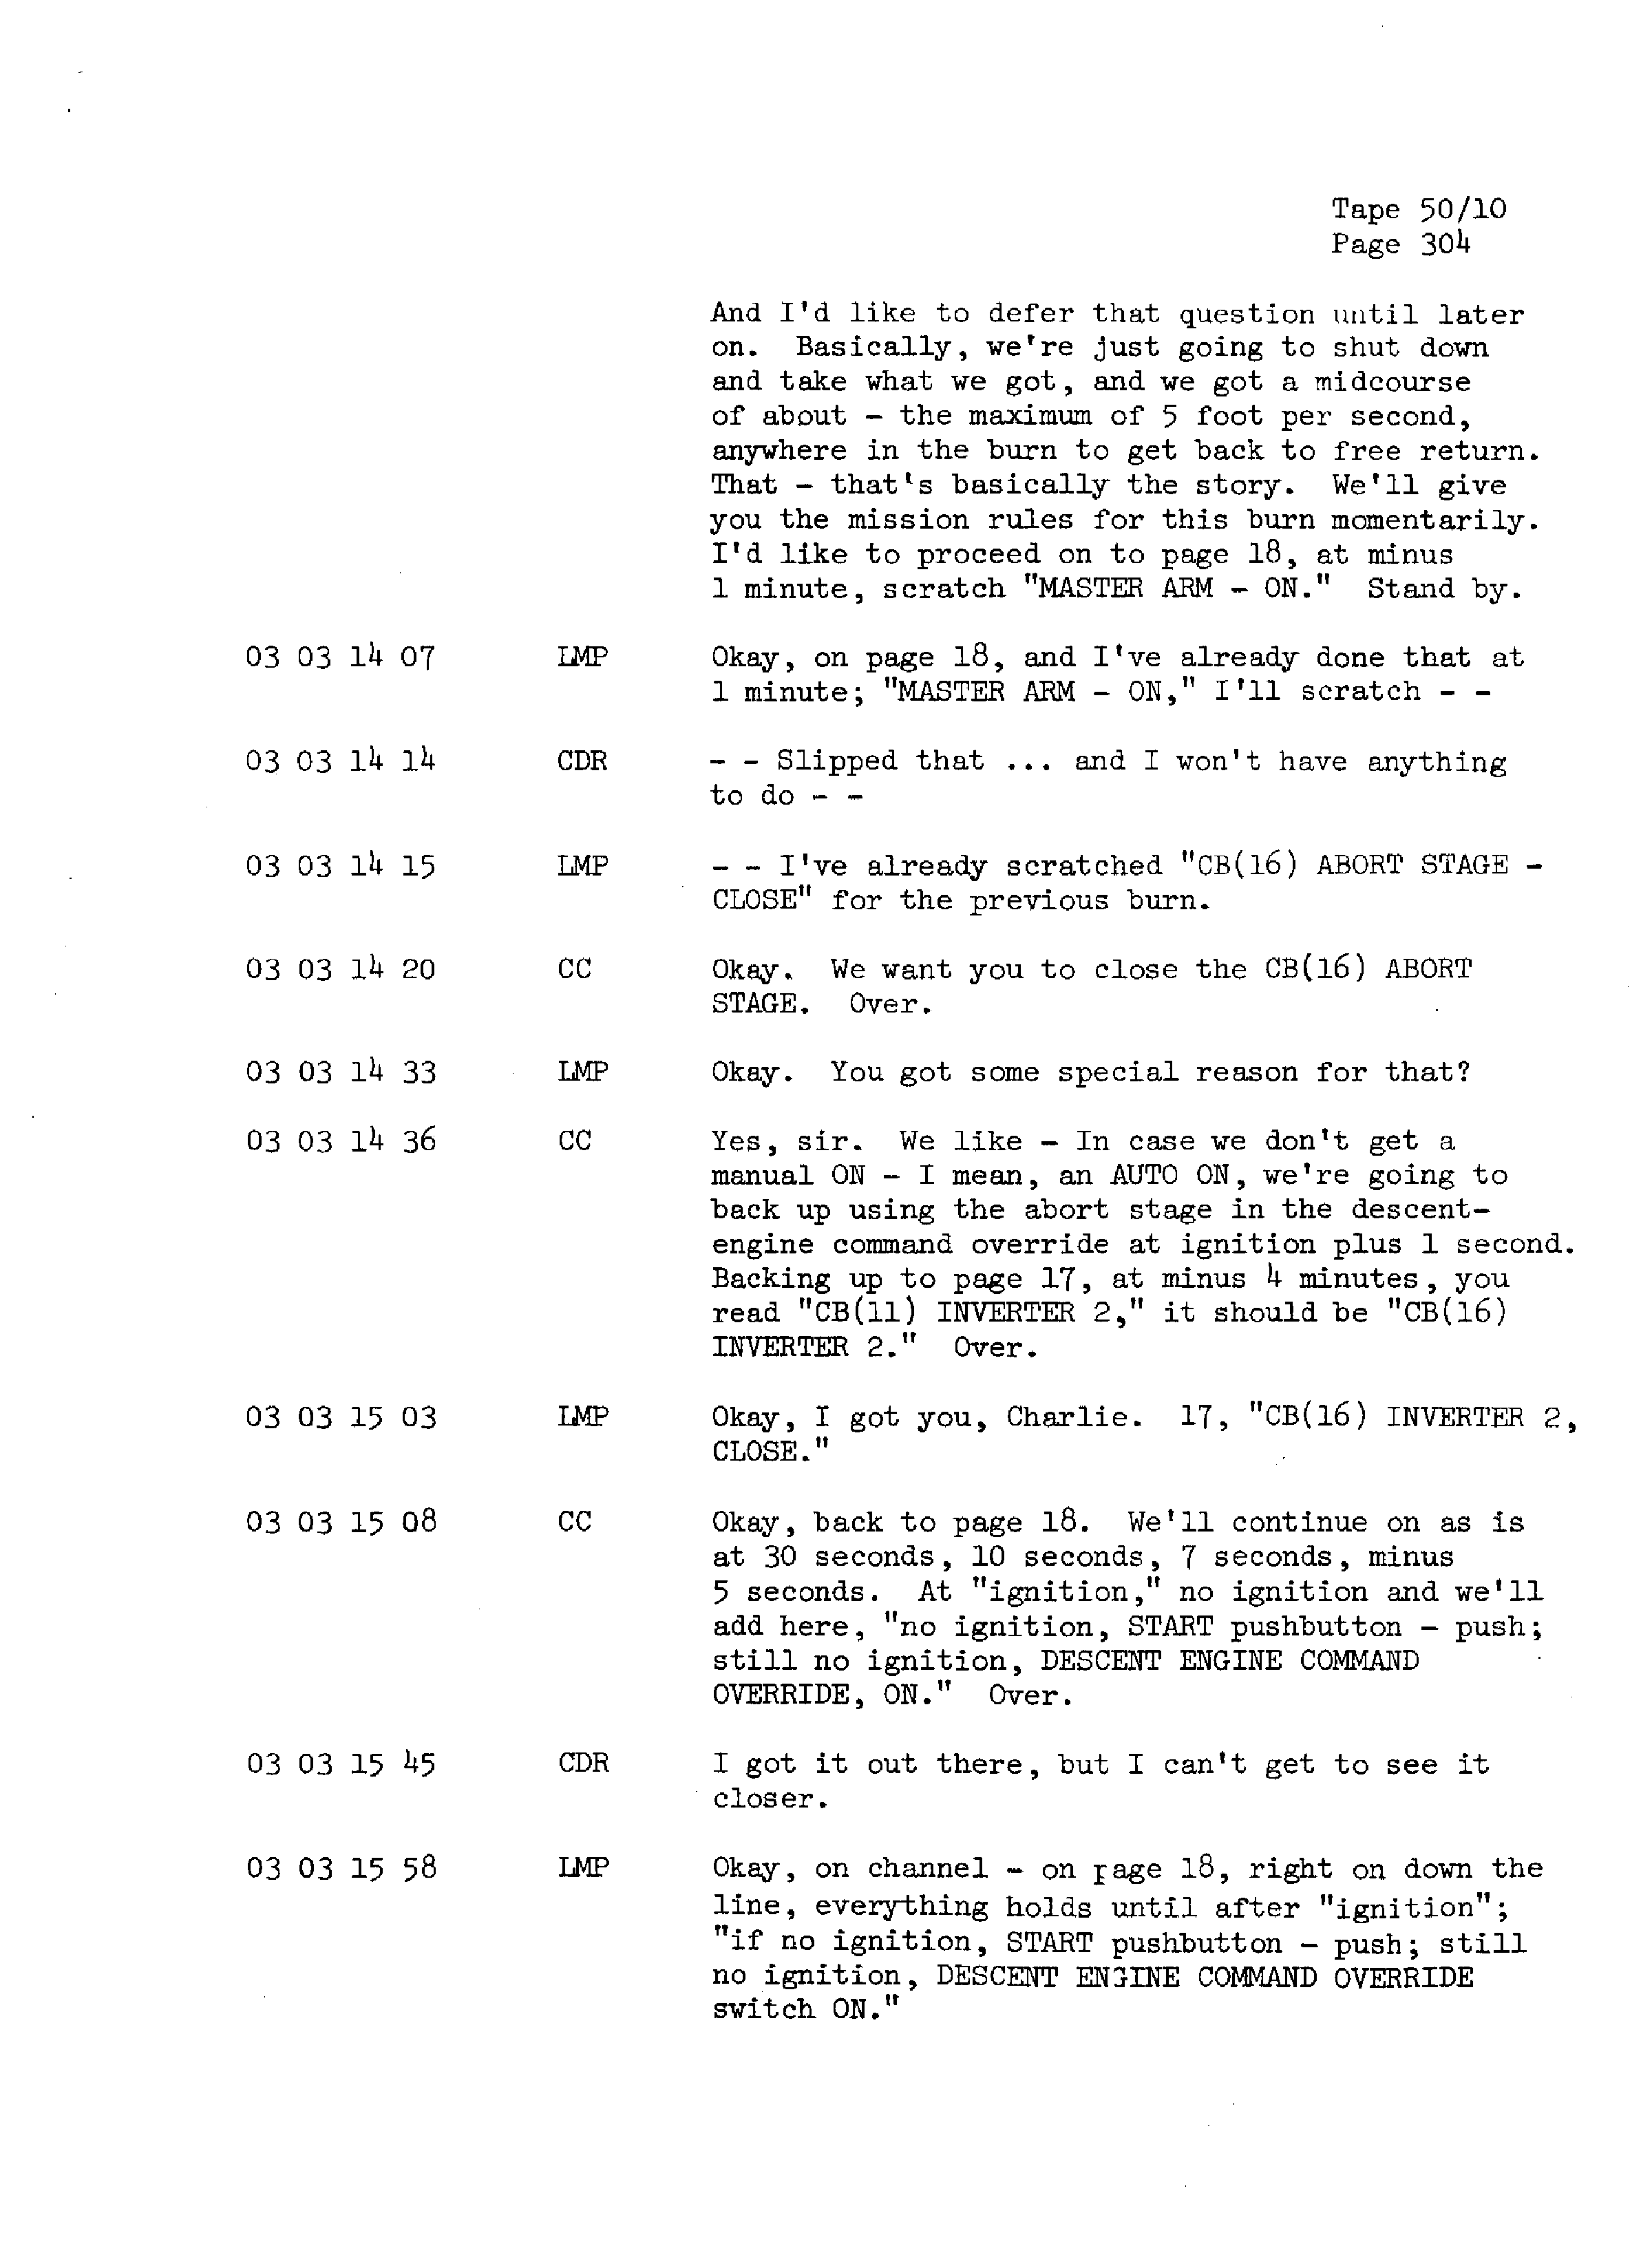 Page 311 of Apollo 13’s original transcript